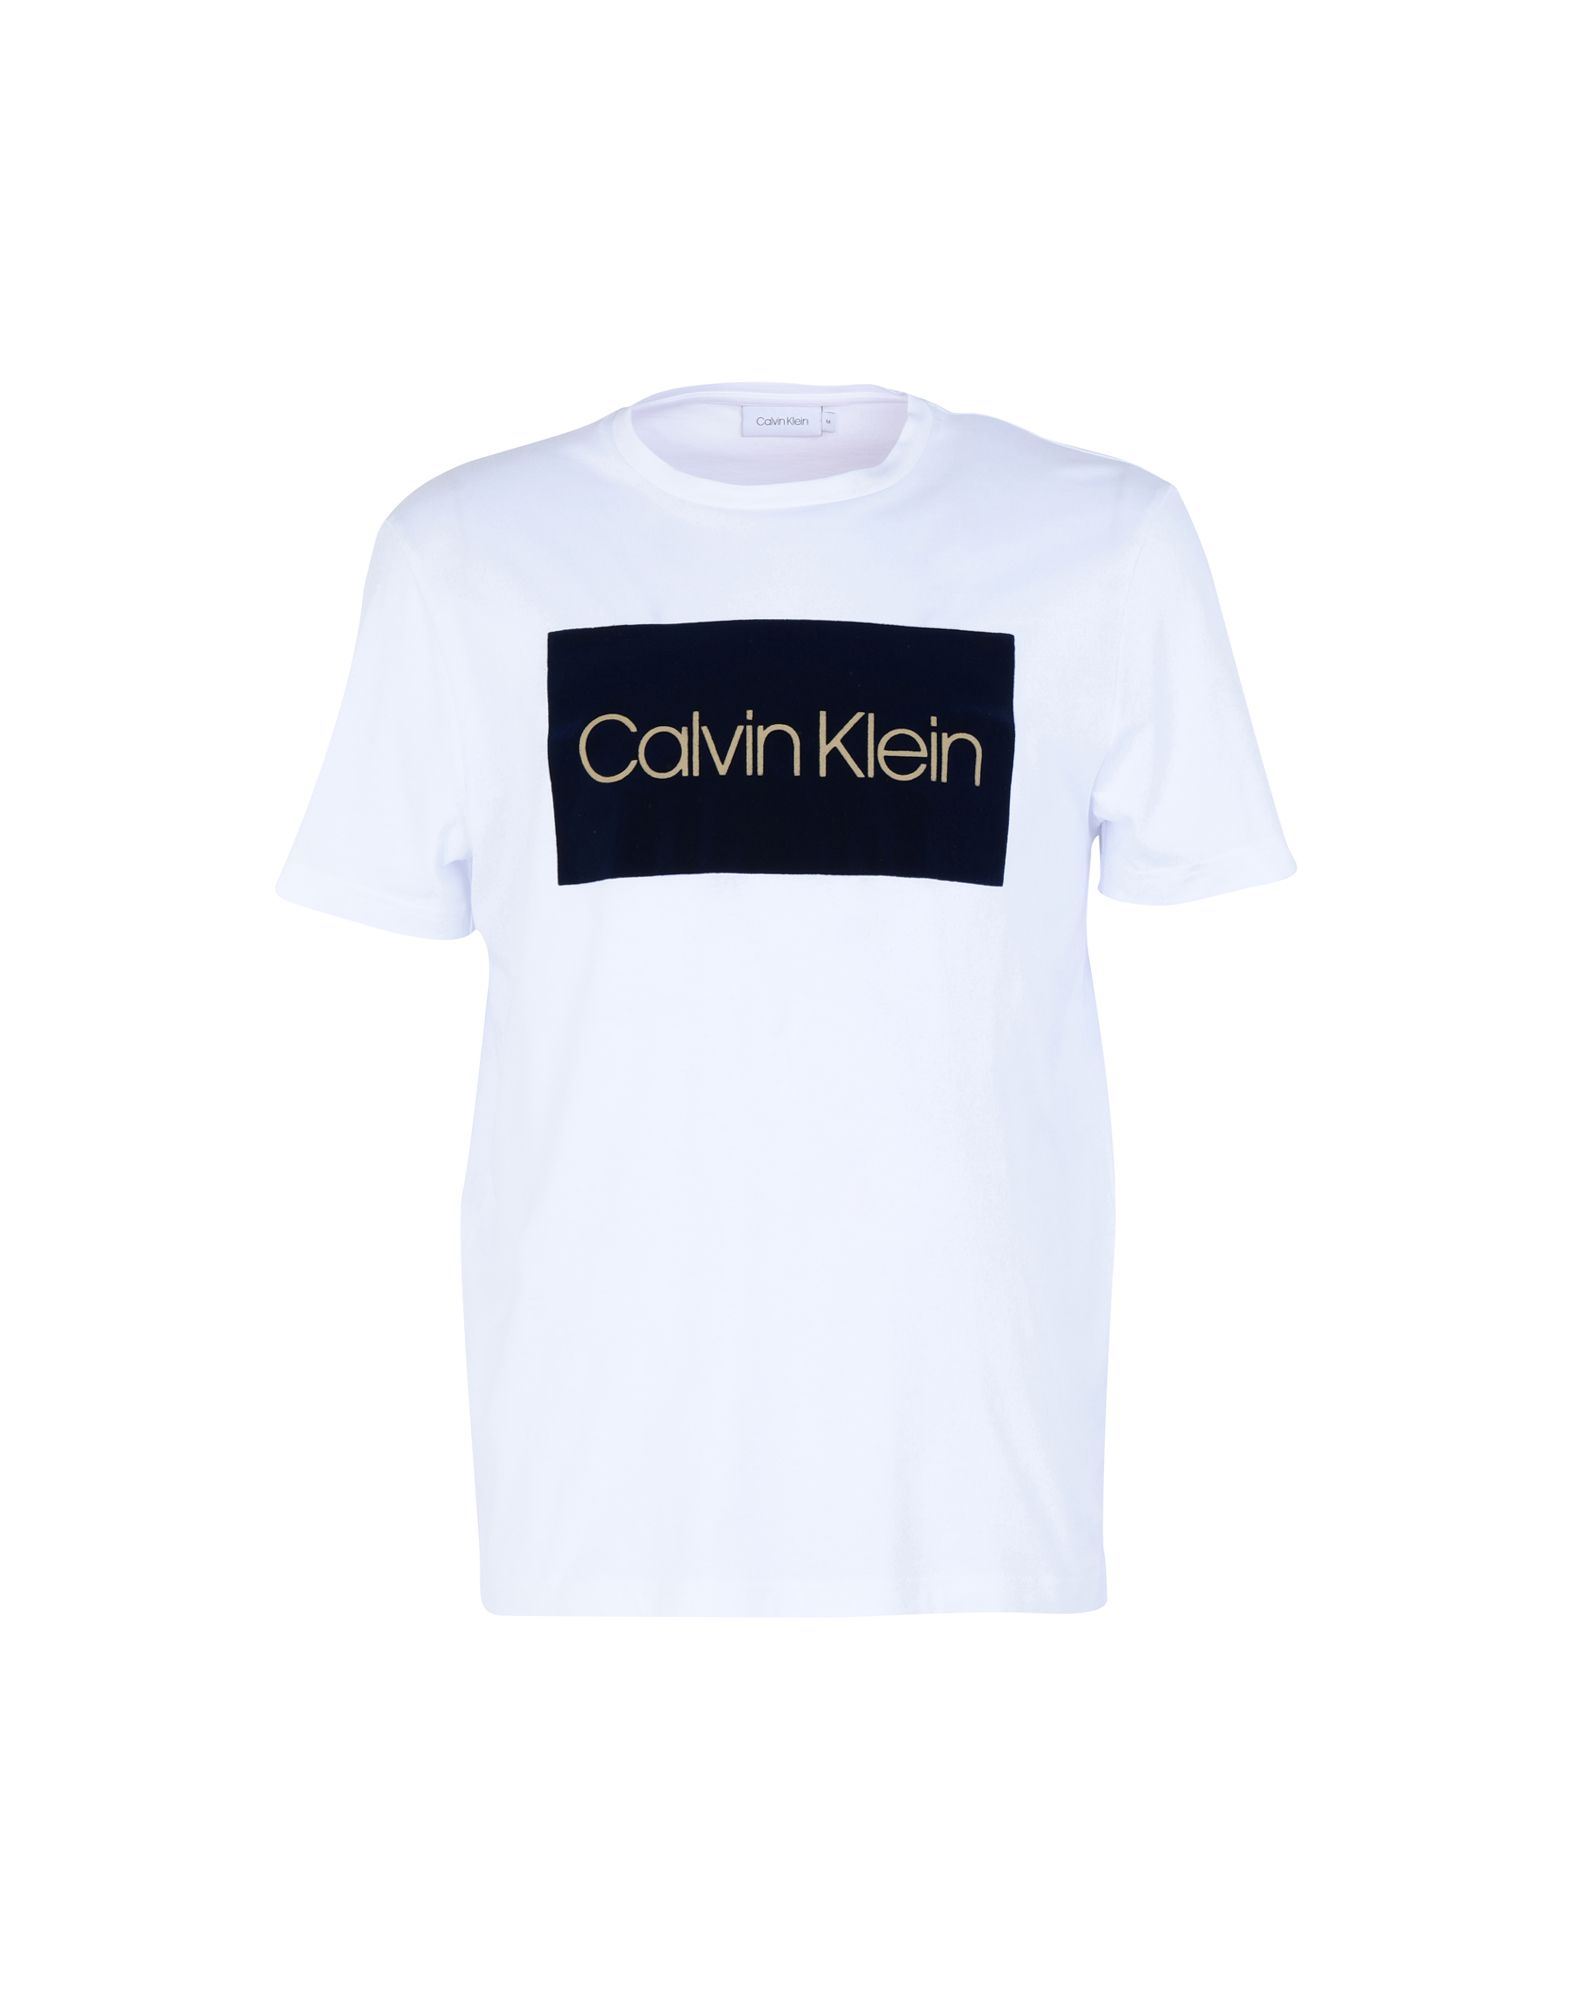 《送料無料》CALVIN KLEIN メンズ T シャツ ホワイト L コットン 100% COTTON ELEVATED LOGO T SHIRT